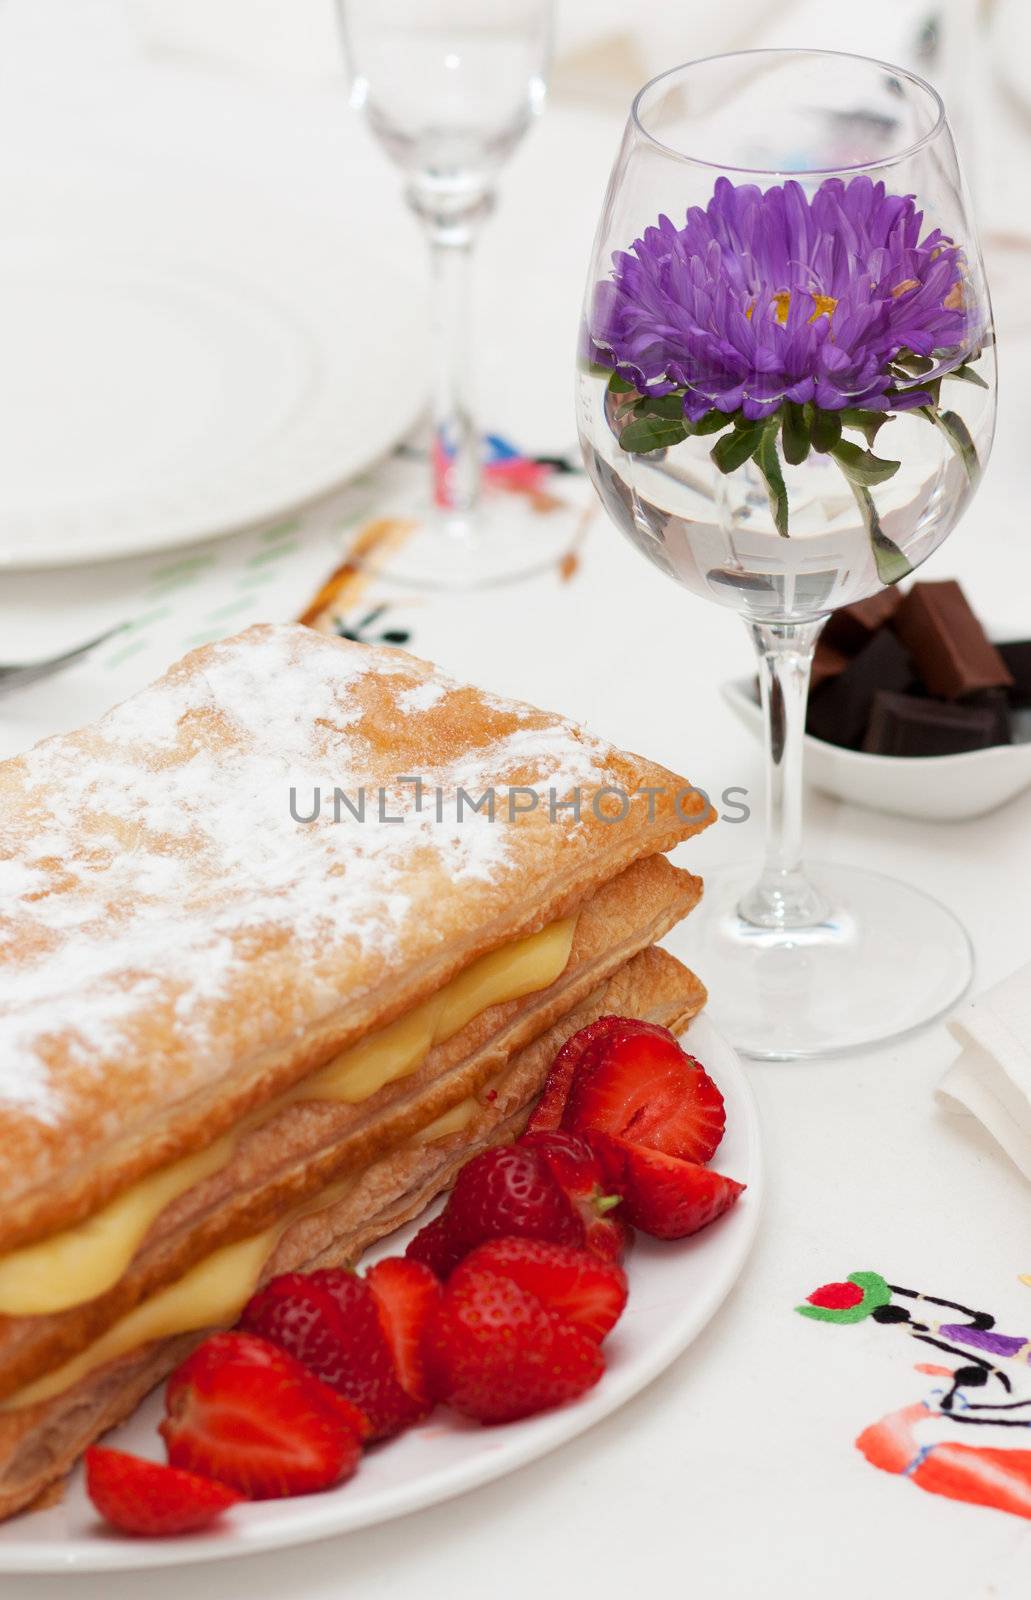 Homemade cake, pastry cream and strawberries